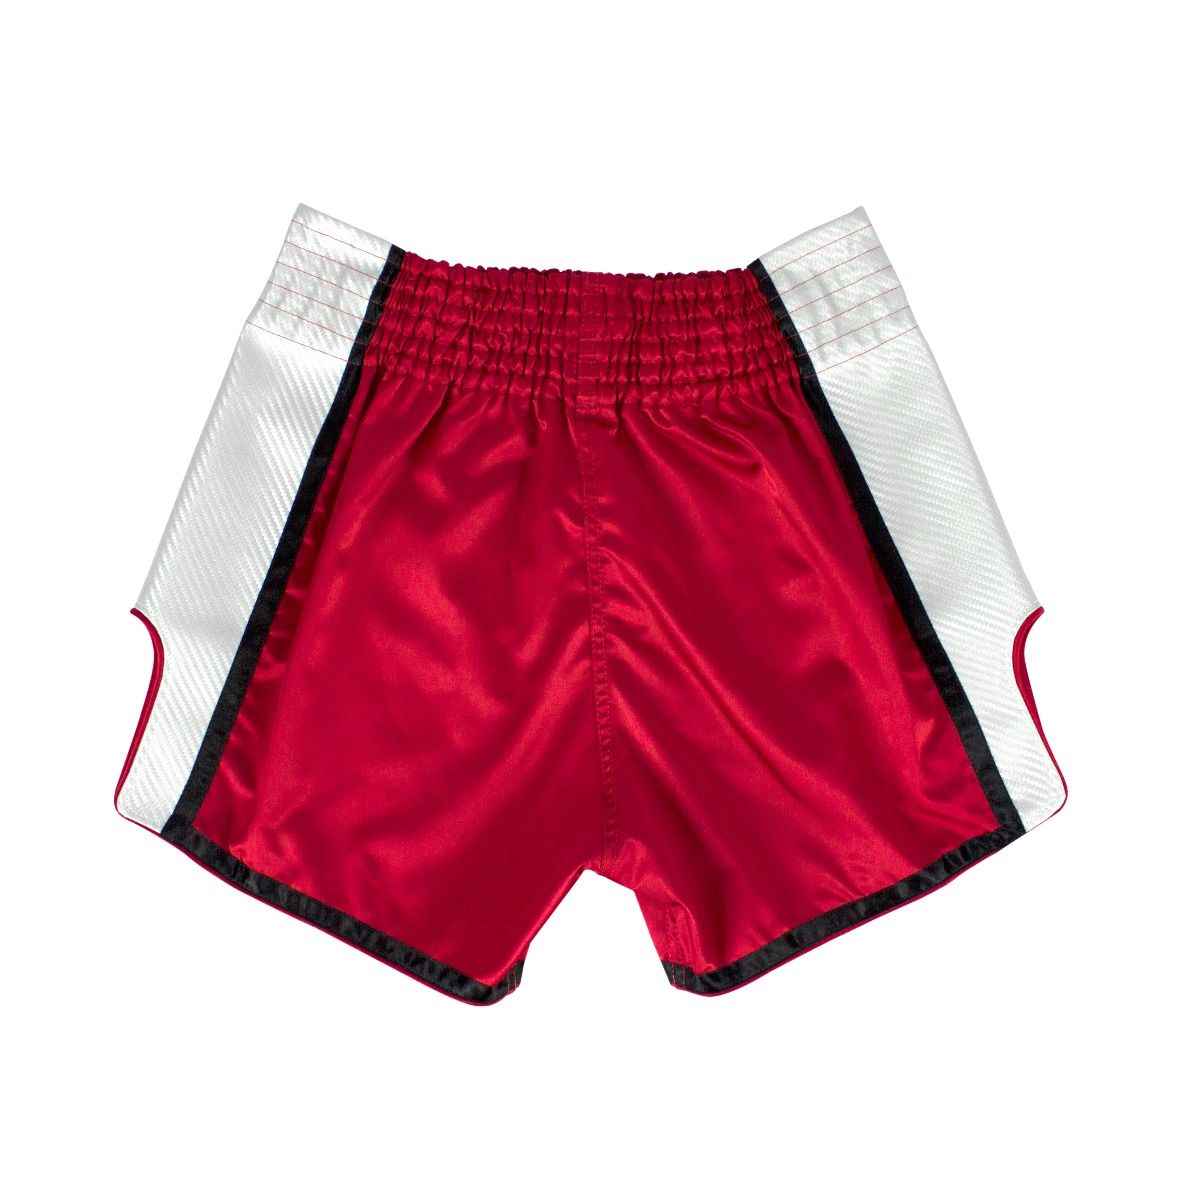 FAIRTEX Slim Cut Muaythai Shorts BS1704 - RedWhite